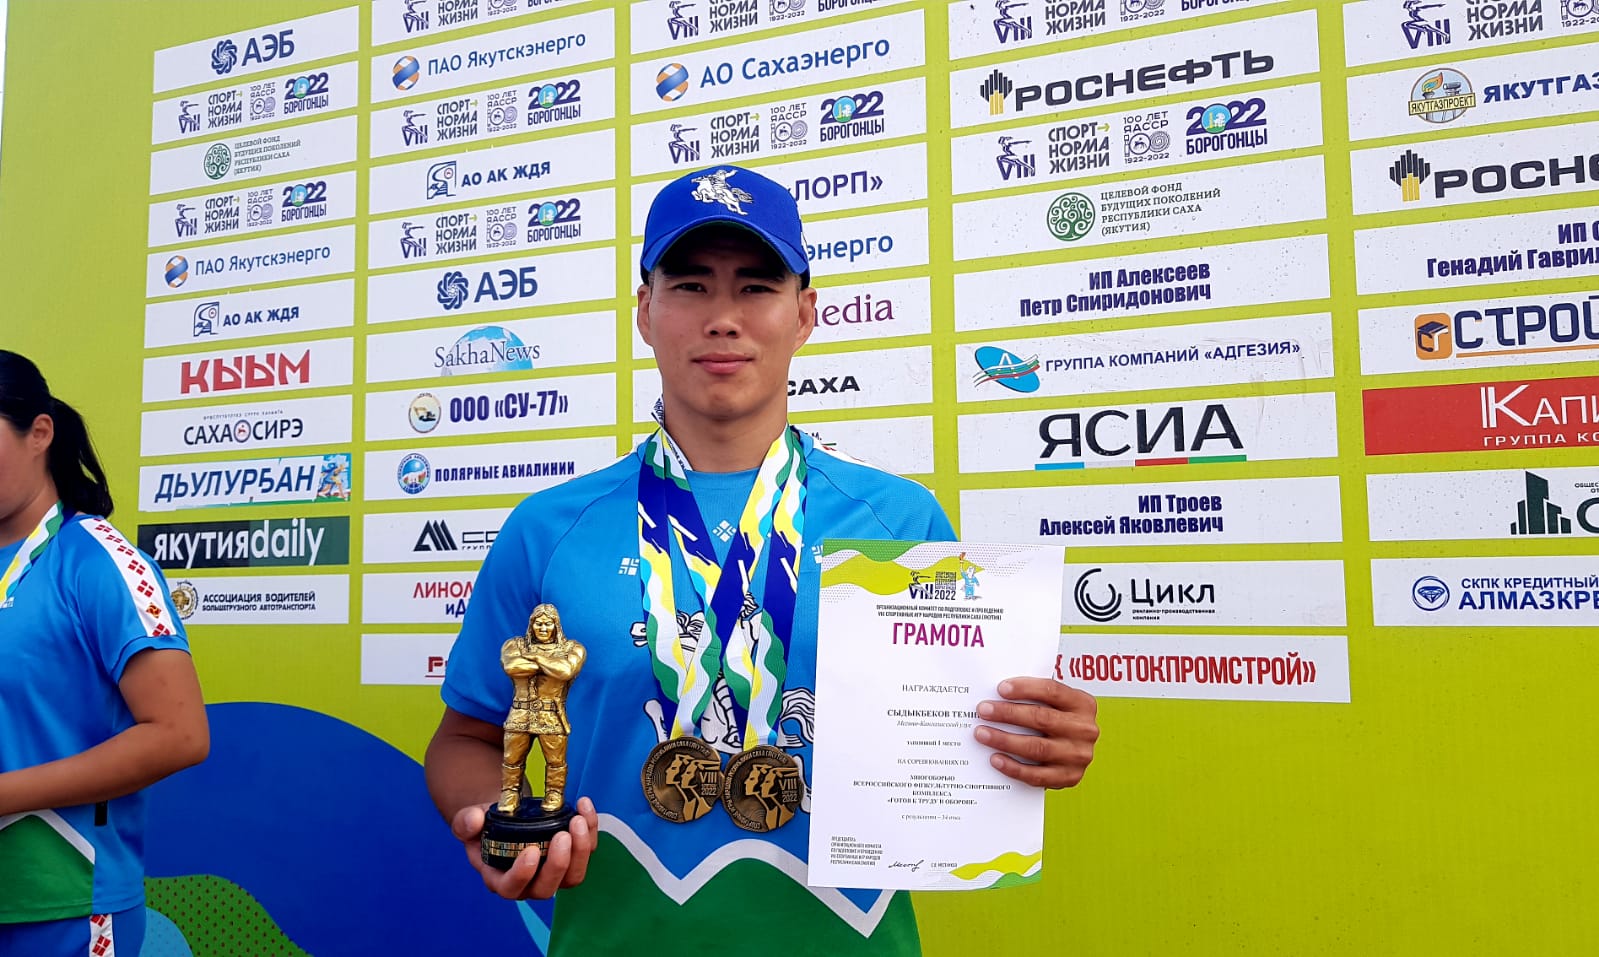 Чемпион многоборья ГТО: было волнительно состязаться с прославленными спортсменами Якутии